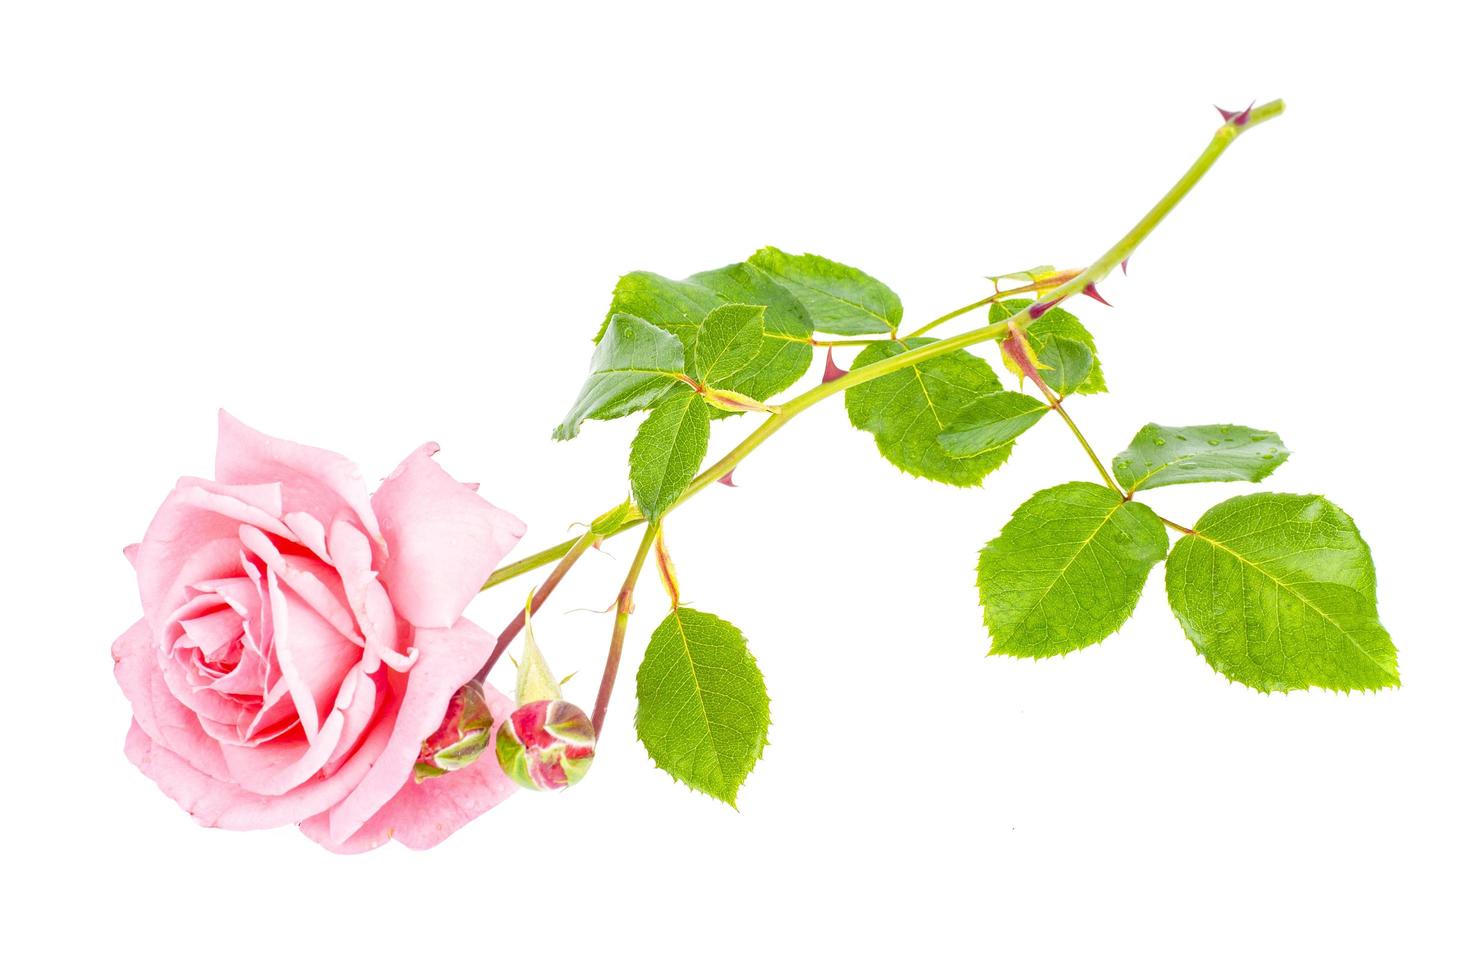 única rosa concurso rosa isolada no fundo branco. foto